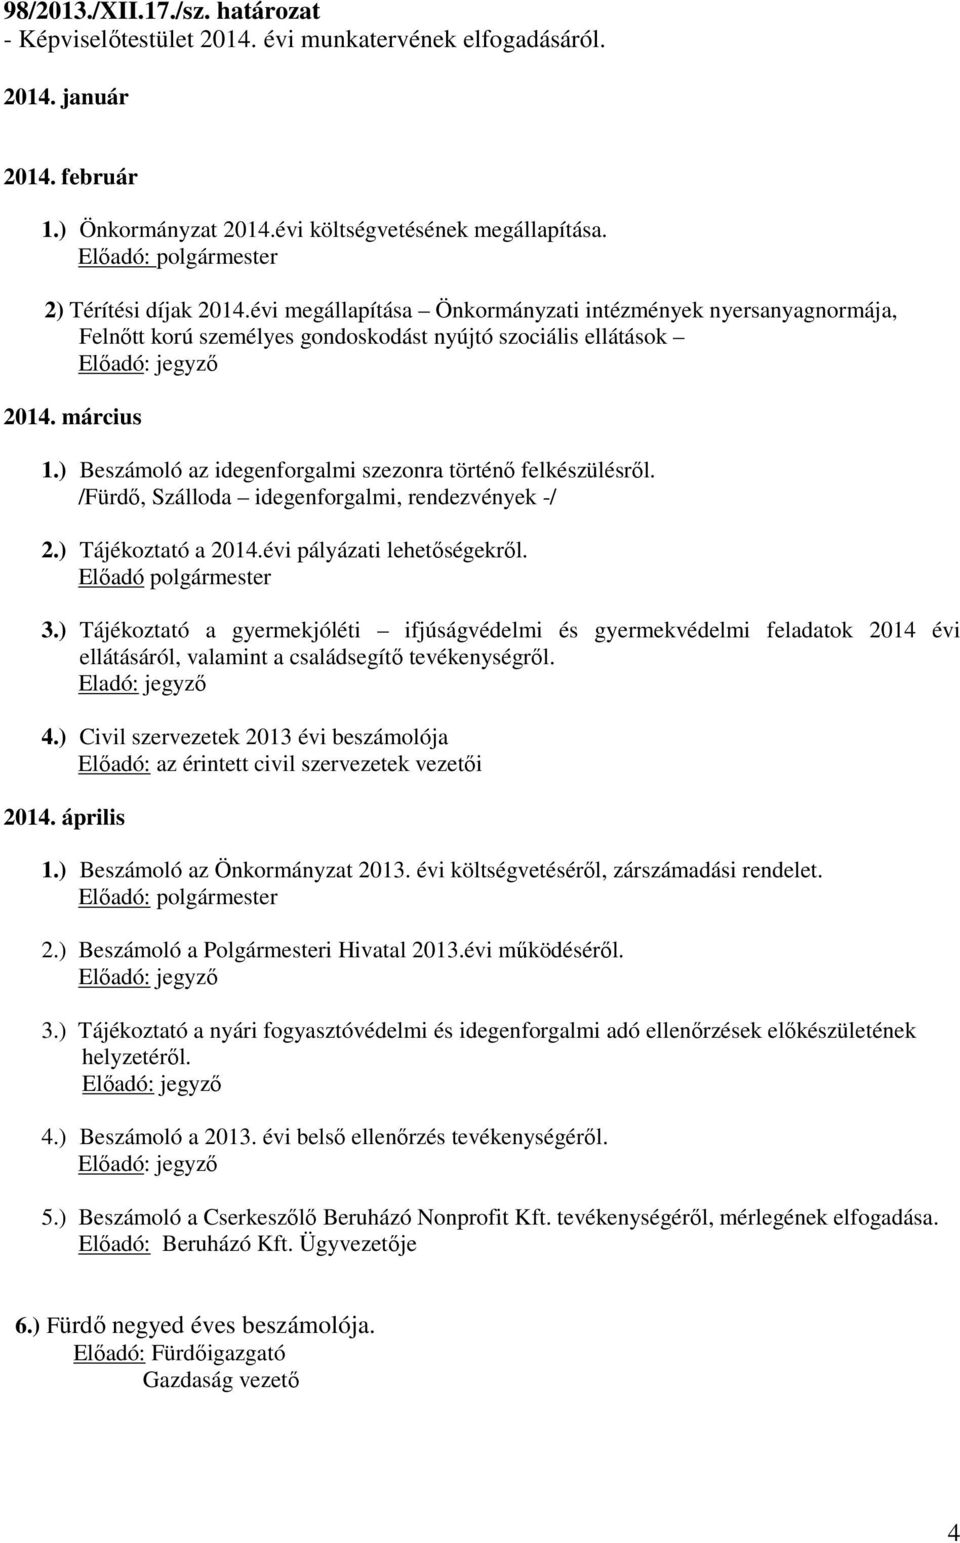 ) Beszámoló az idegenforgalmi szezonra történő felkészülésről. /Fürdő, Szálloda idegenforgalmi, rendezvények -/ 2.) Tájékoztató a 2014.évi pályázati lehetőségekről. Előadó polgármester 3.